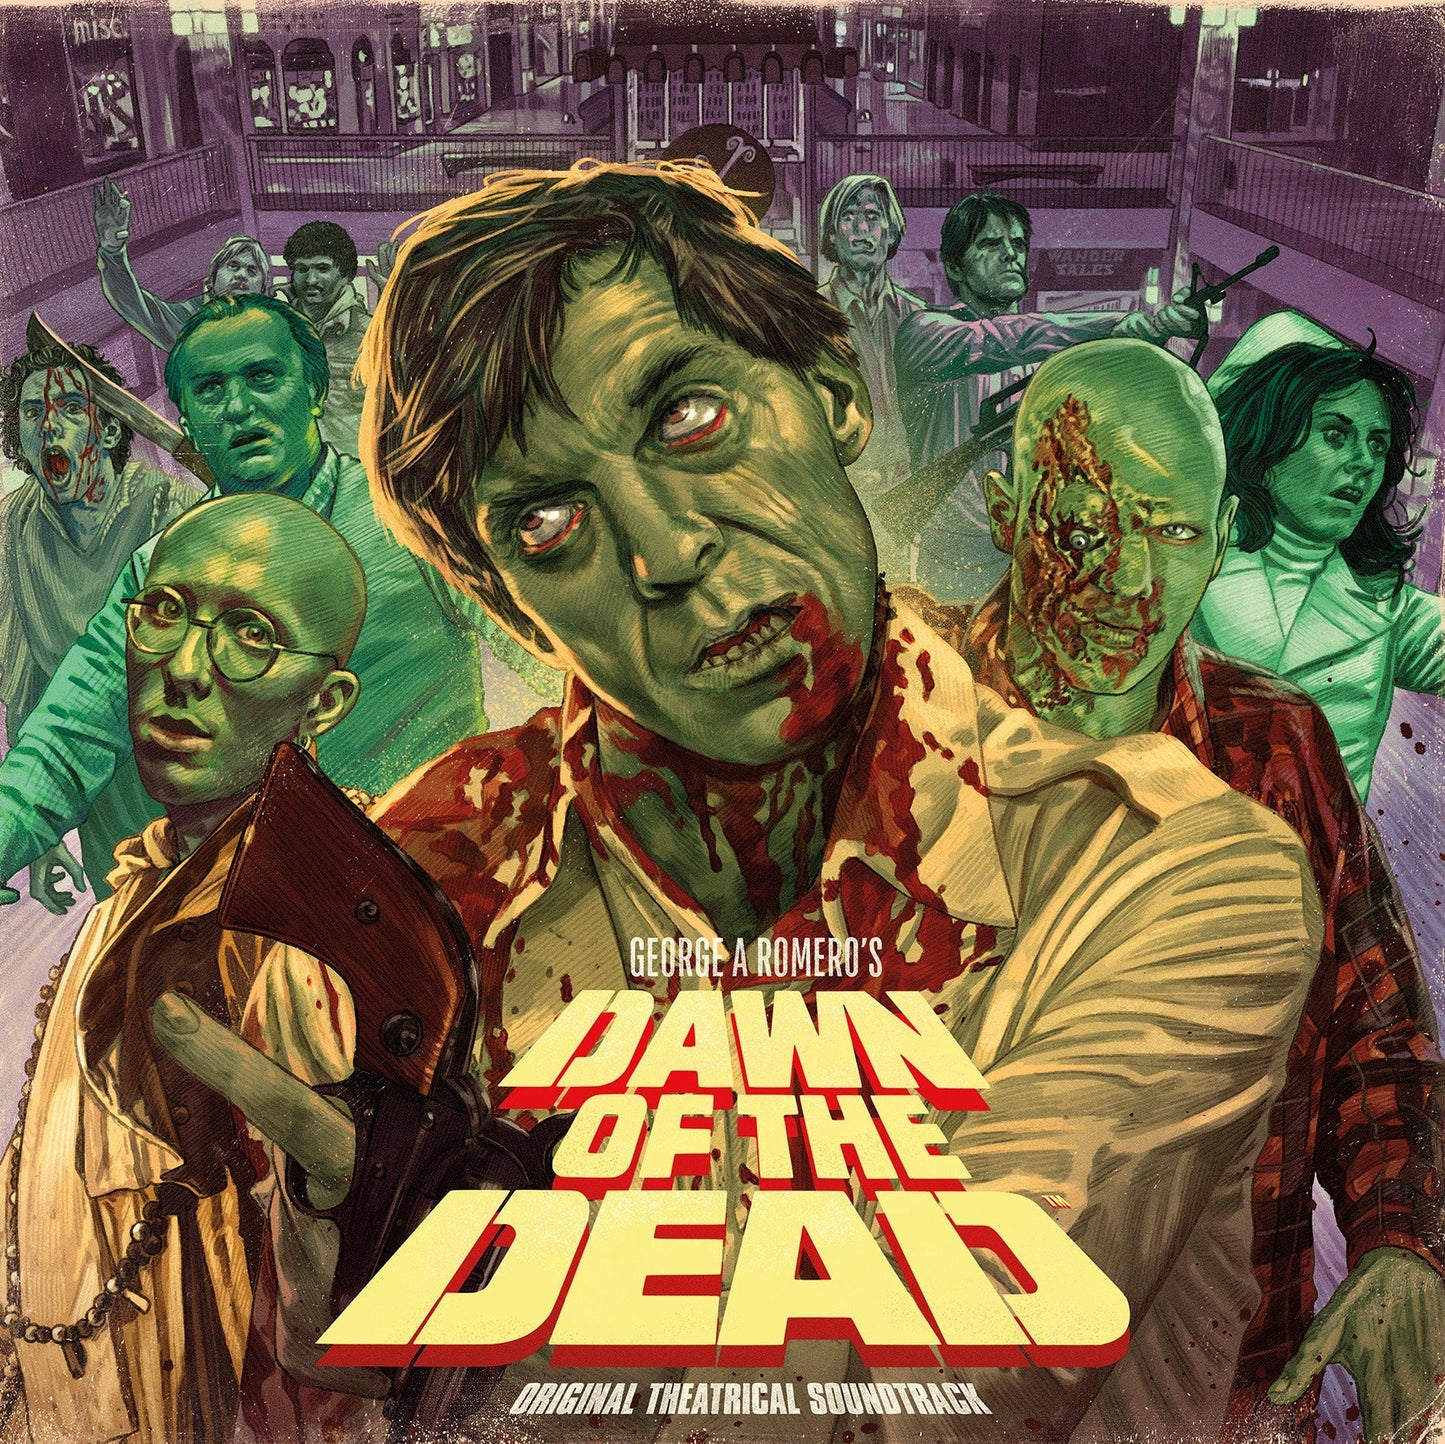 George A. Romero's Dawn Of The Dead (Original Theatrical Soundtrack)